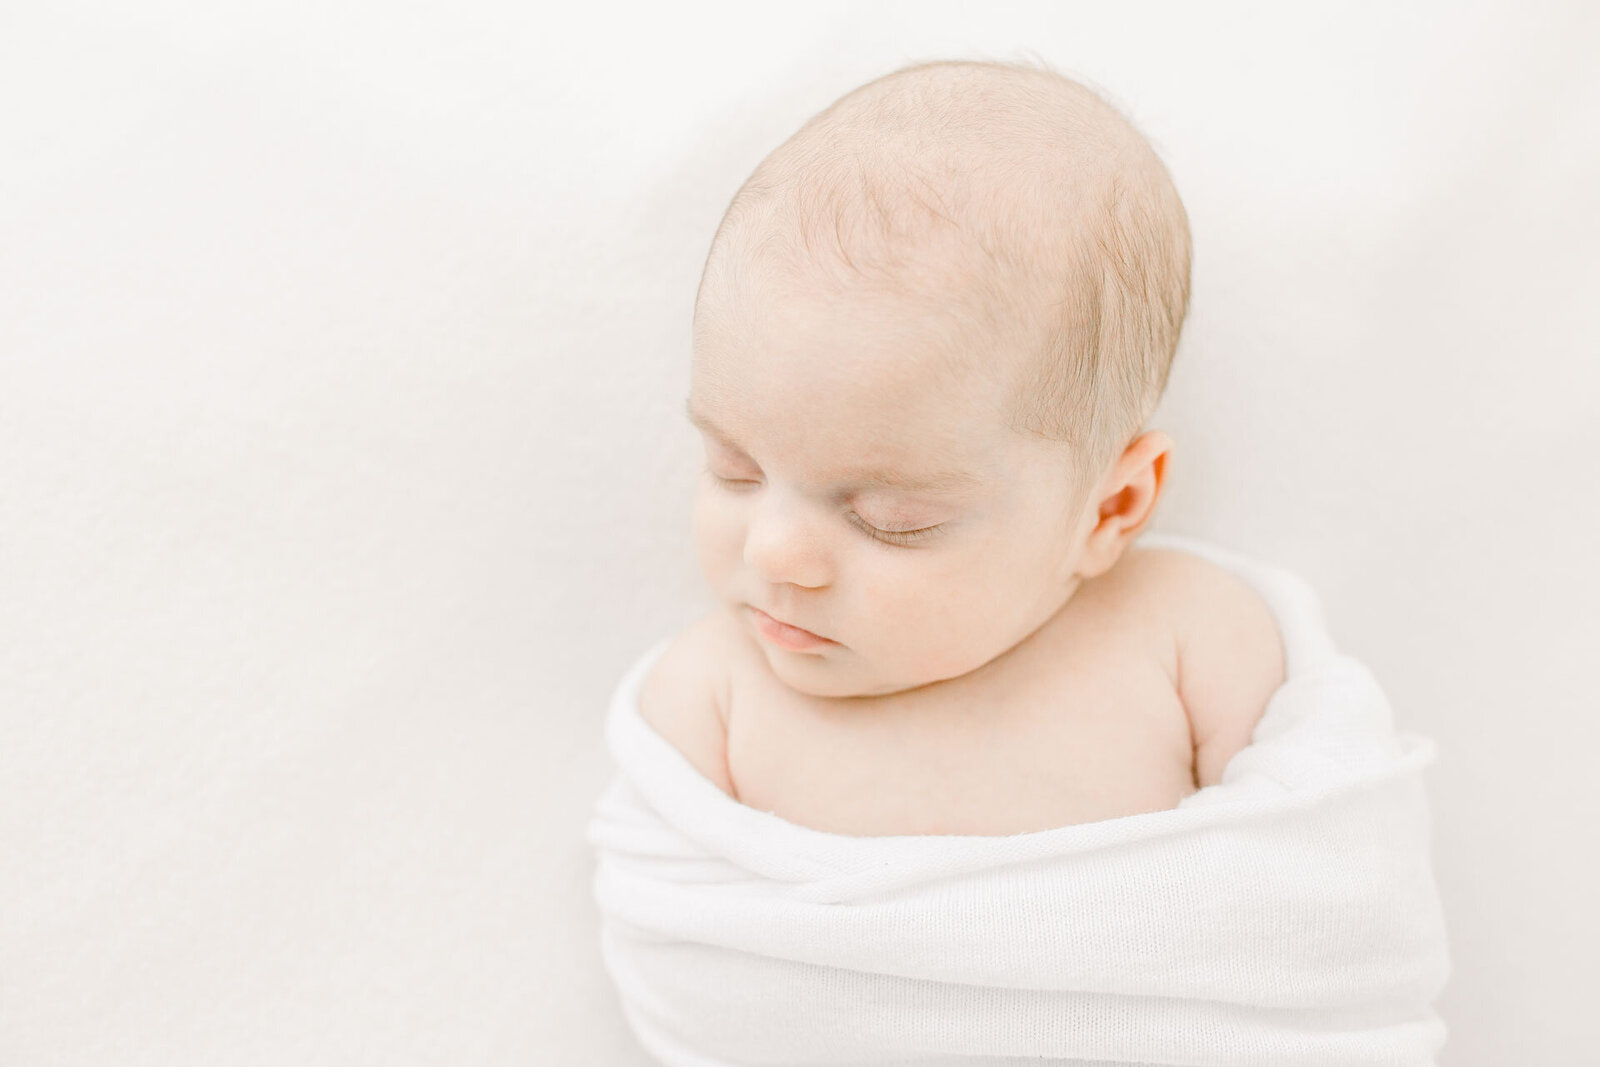 Zarte Neugeborenenfotografie mit Nahaufnahme eines schlafenden Babys. Alles in weiß.